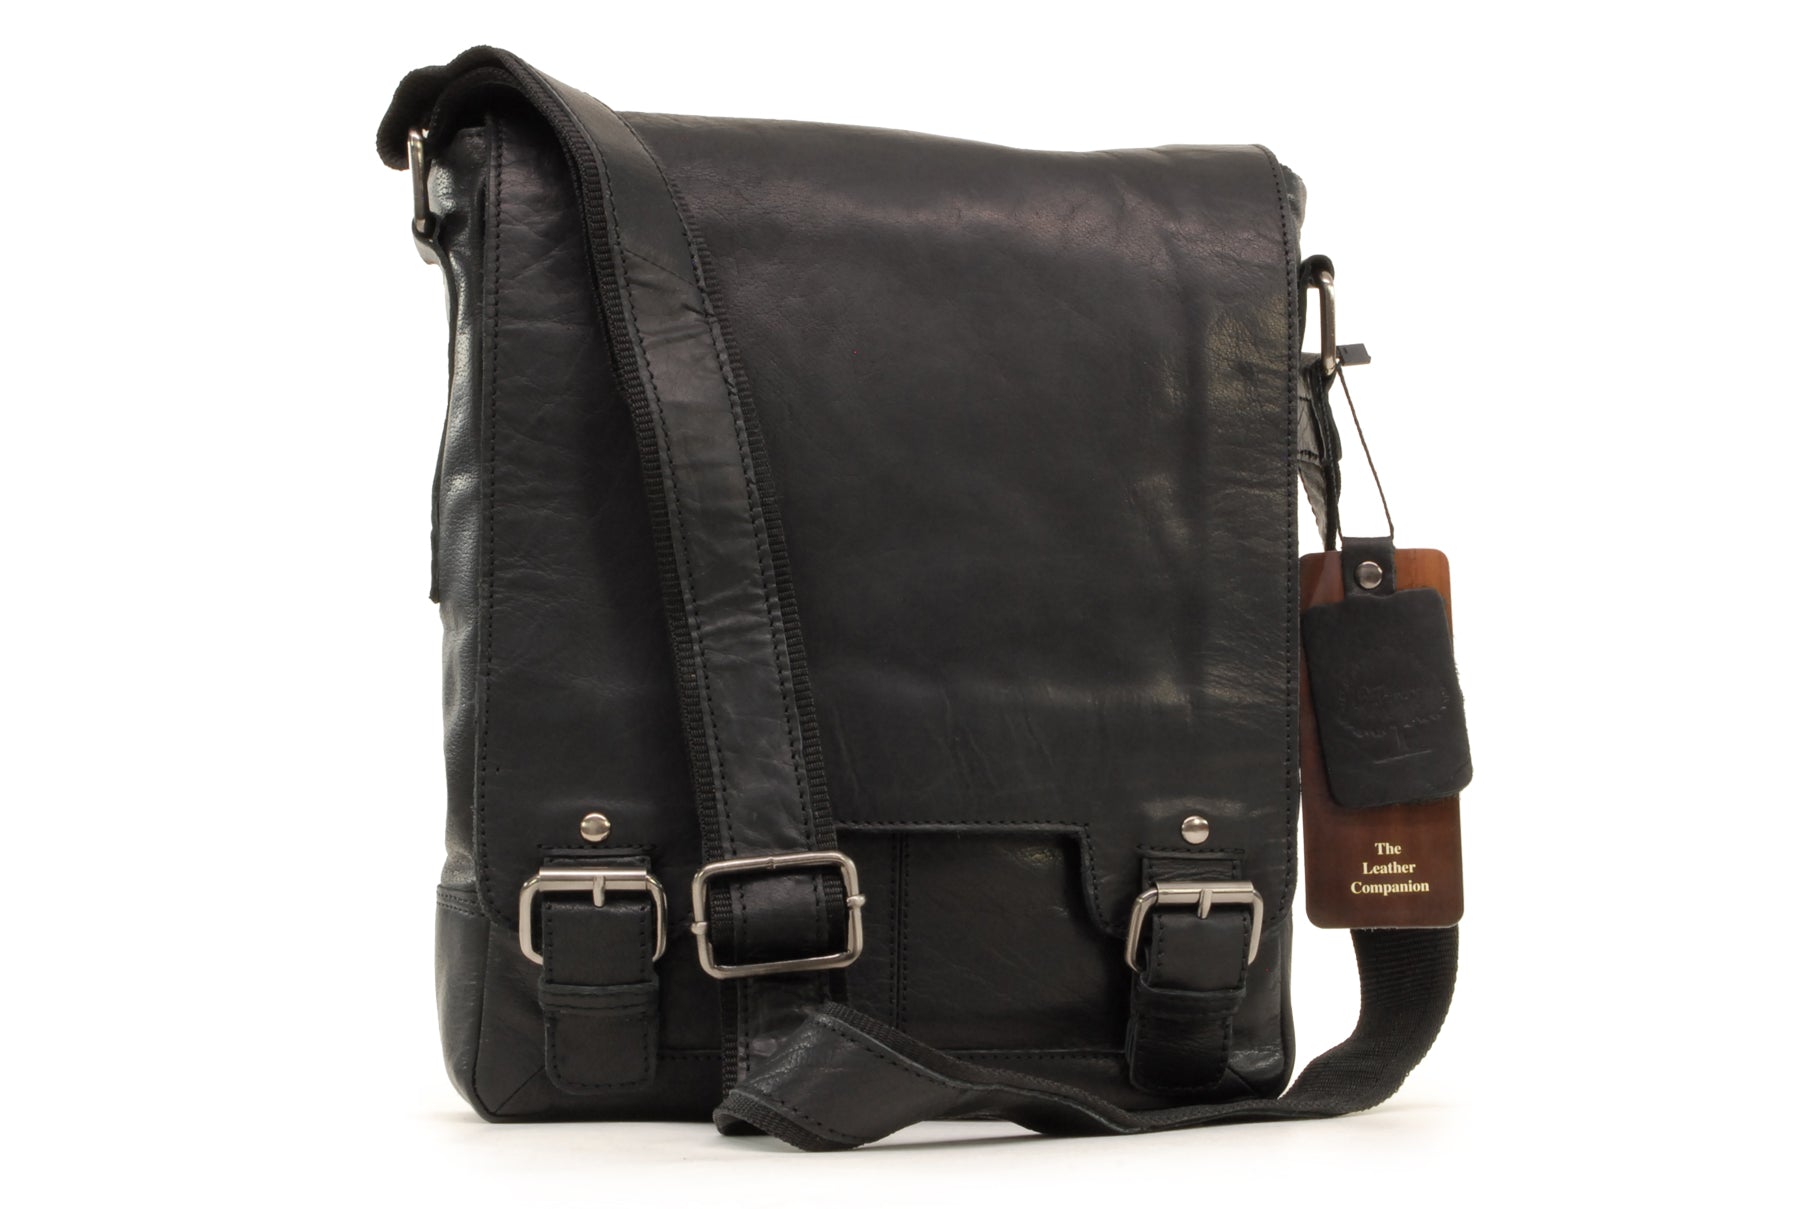 Ashwood Leather Messenger Bag - Black